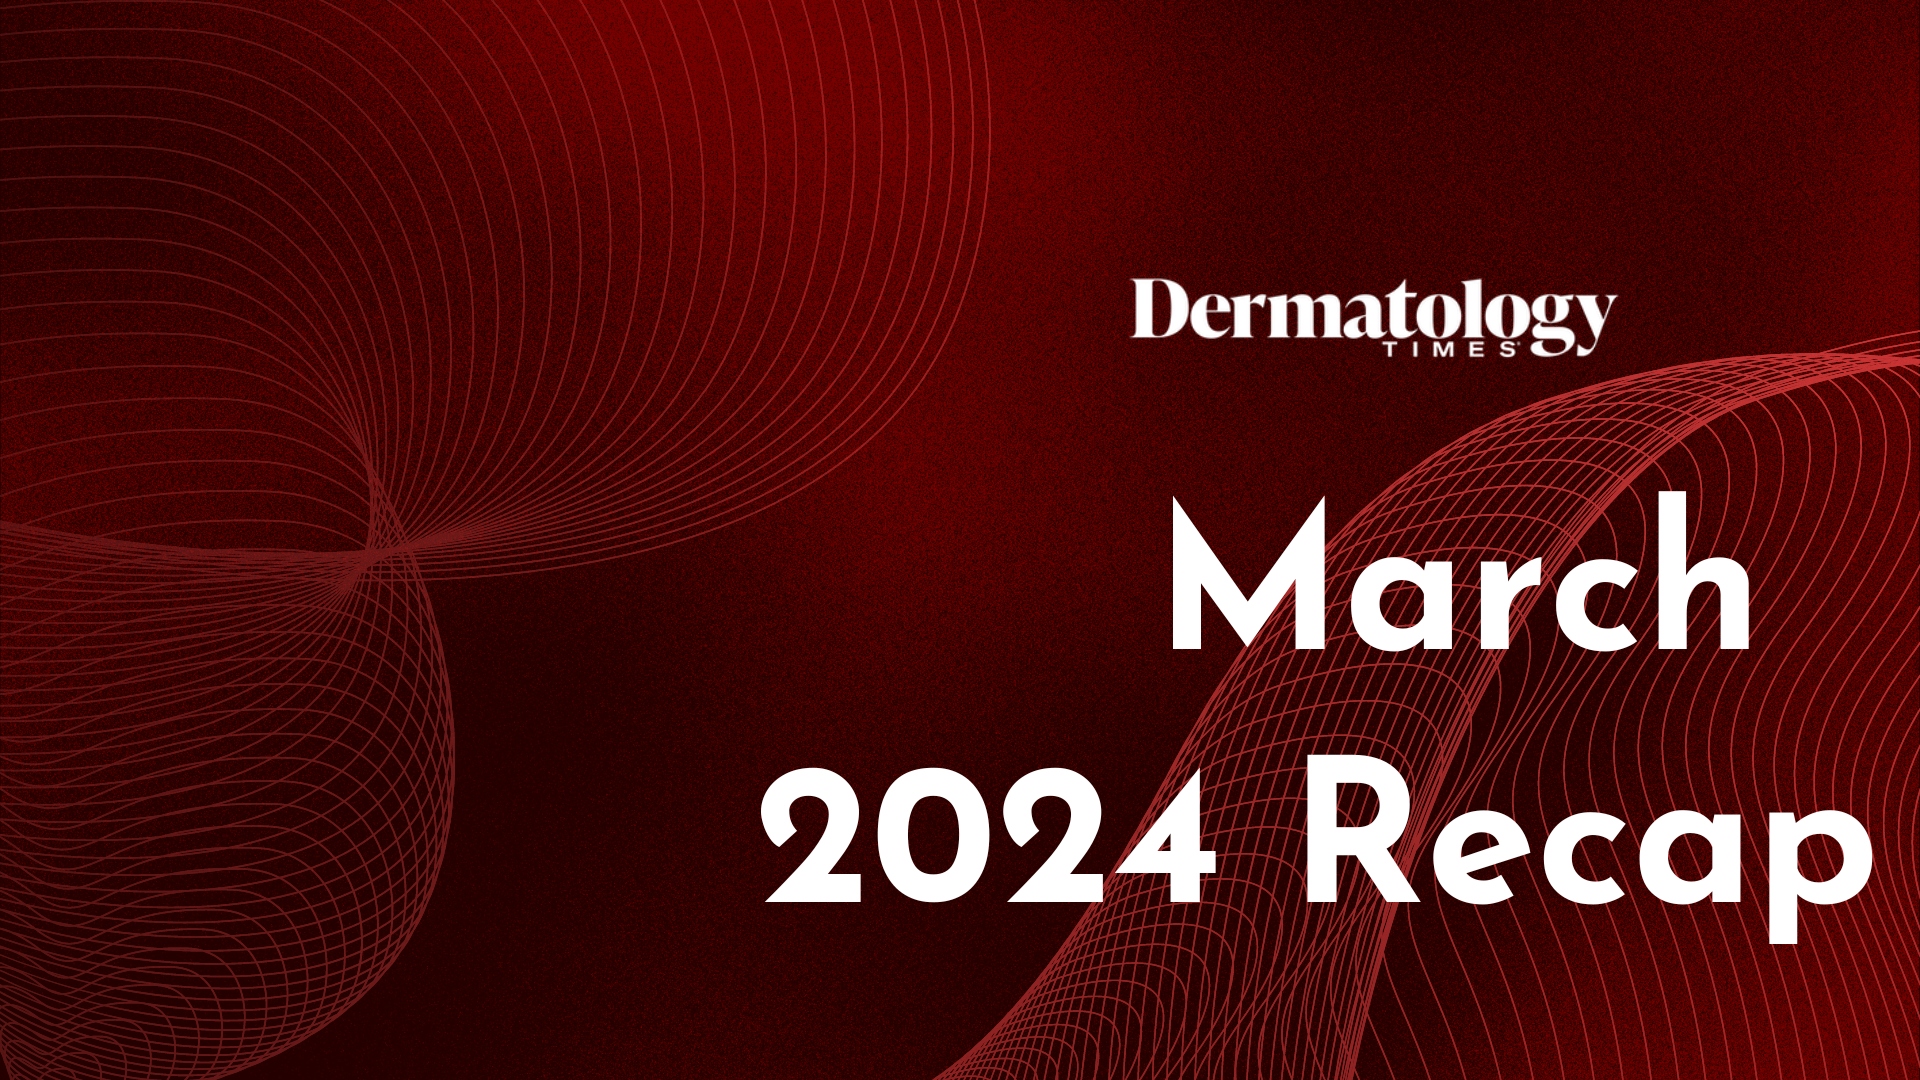 Dermatology Times March 2024 Recap